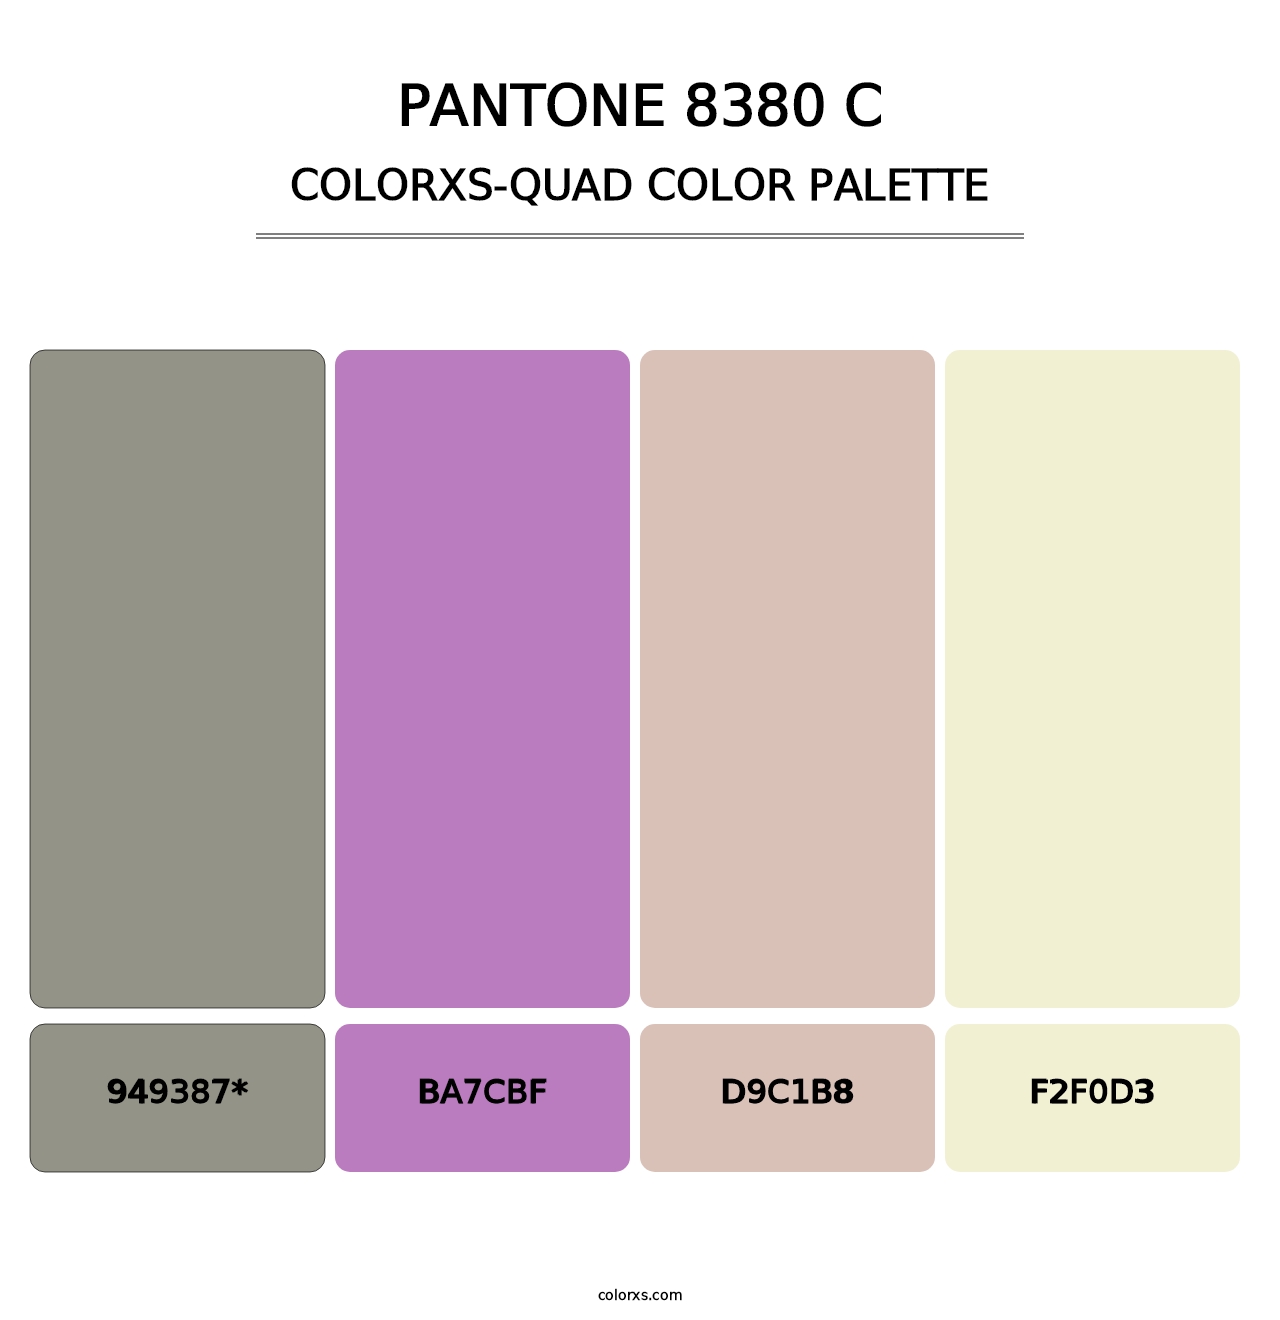 PANTONE 8380 C - Colorxs Quad Palette